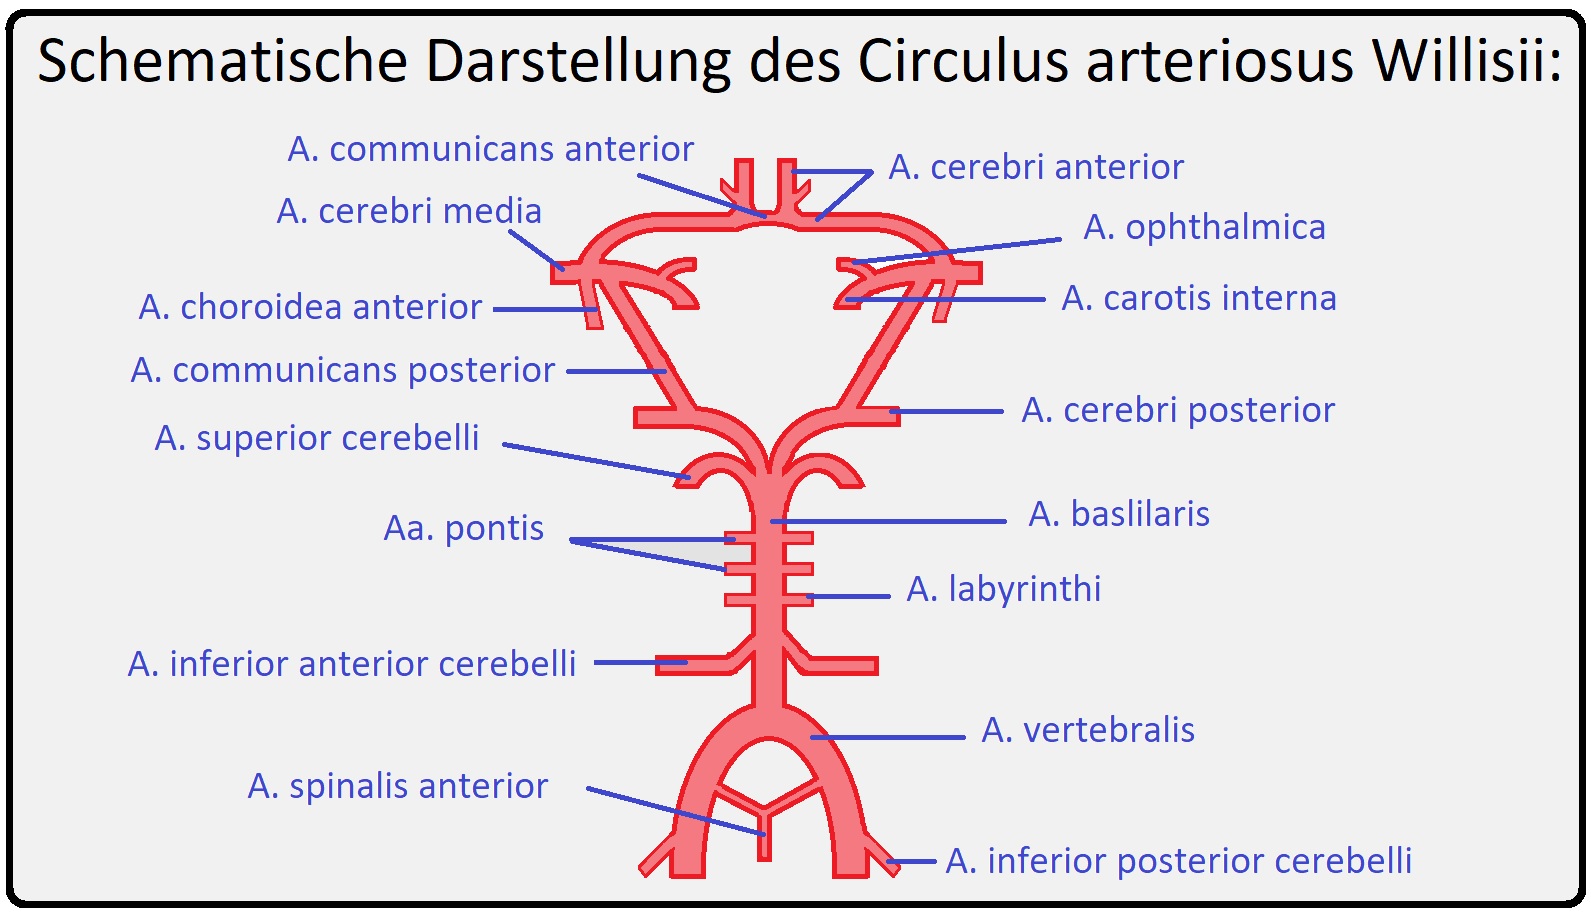 017 Schematische Darstellung des Circulus arteriosus Willisii